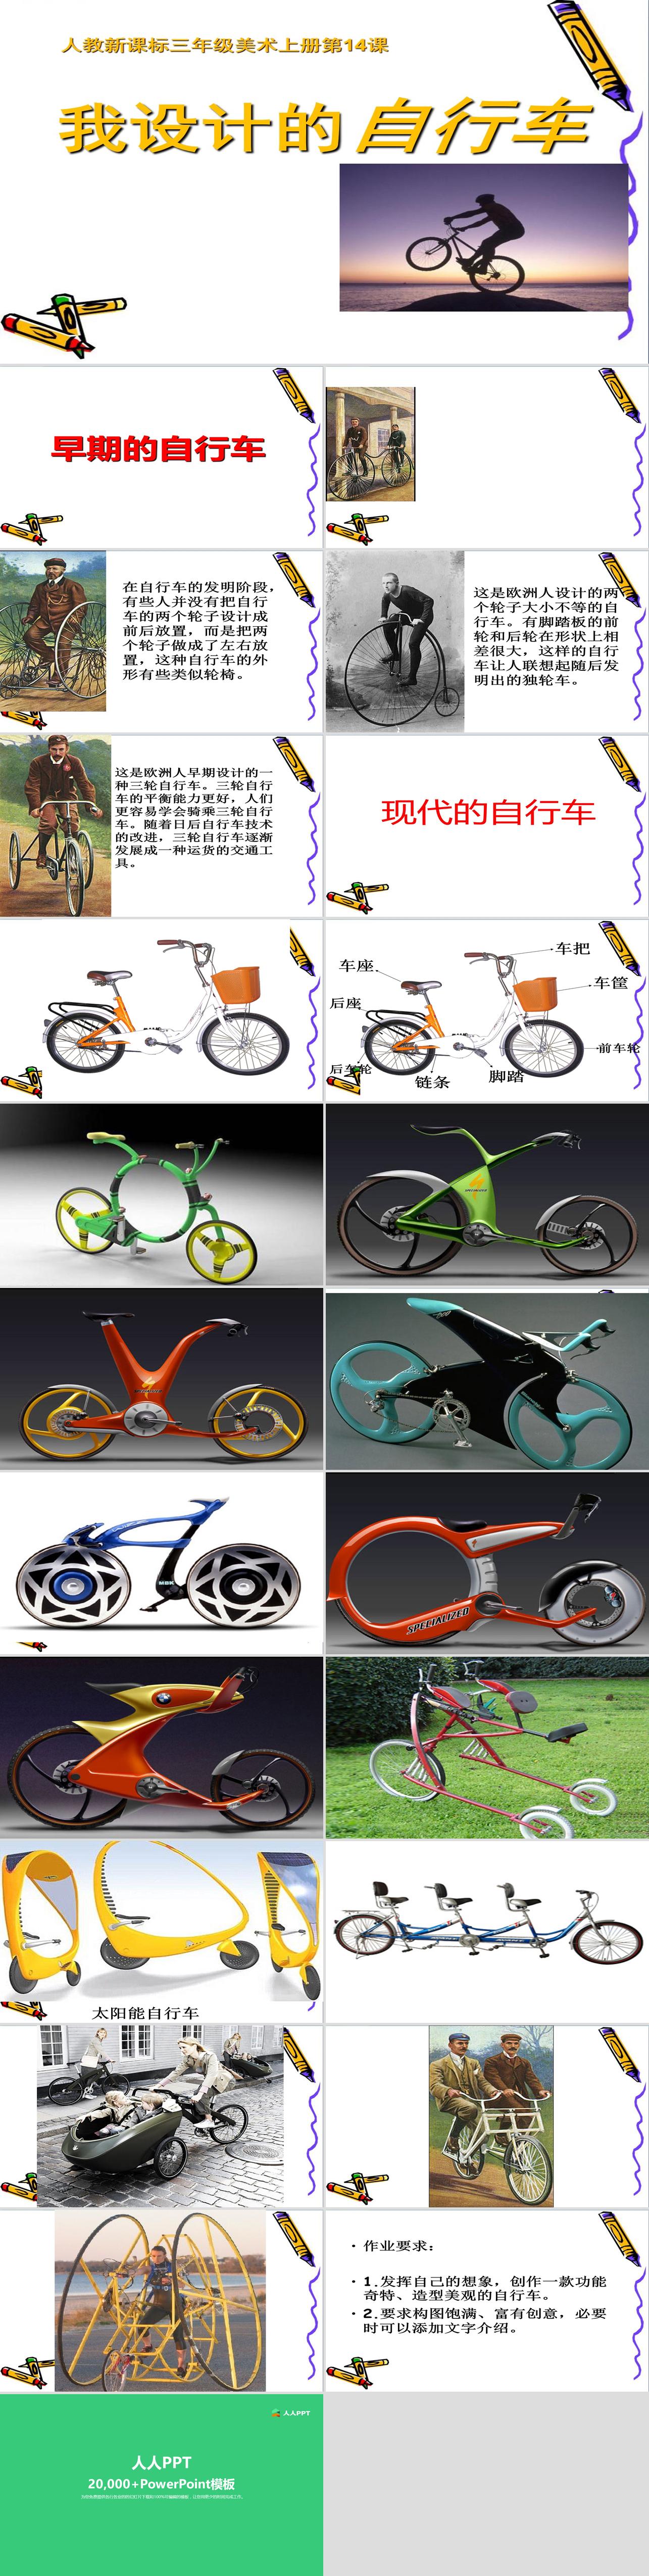 《我设计的自行车》PPT课件长图